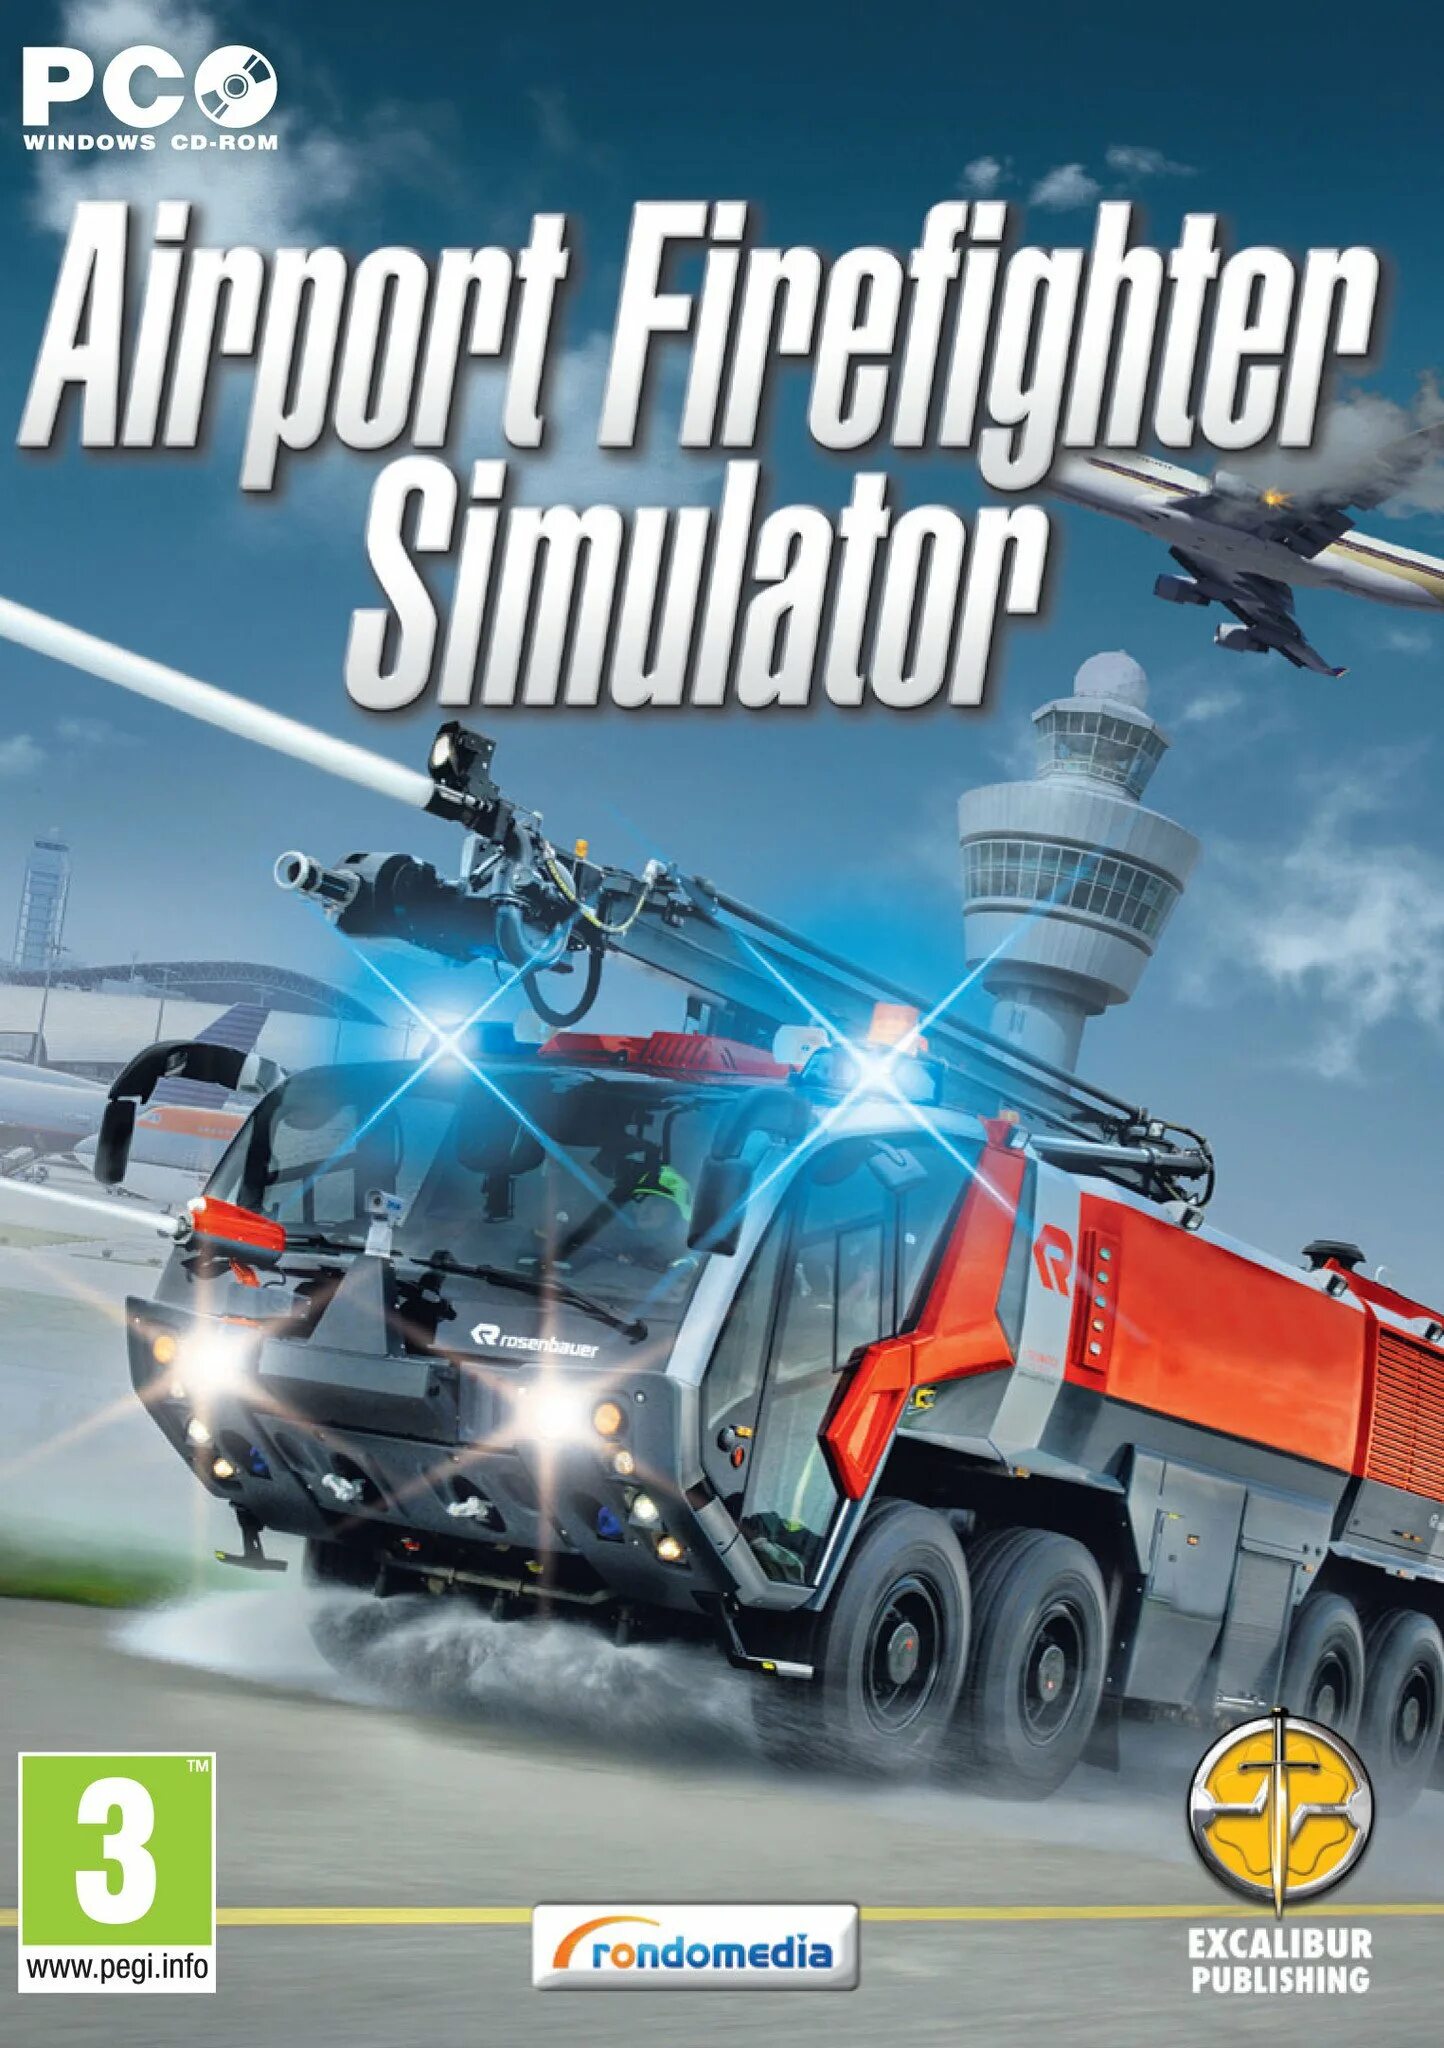 Симуляторы обложка. Firefighters 2014 игра. Firefighters аэропорт the Simulation. Airport Firefighter Simulator 2015. Аэропорт пожарный симулятор.